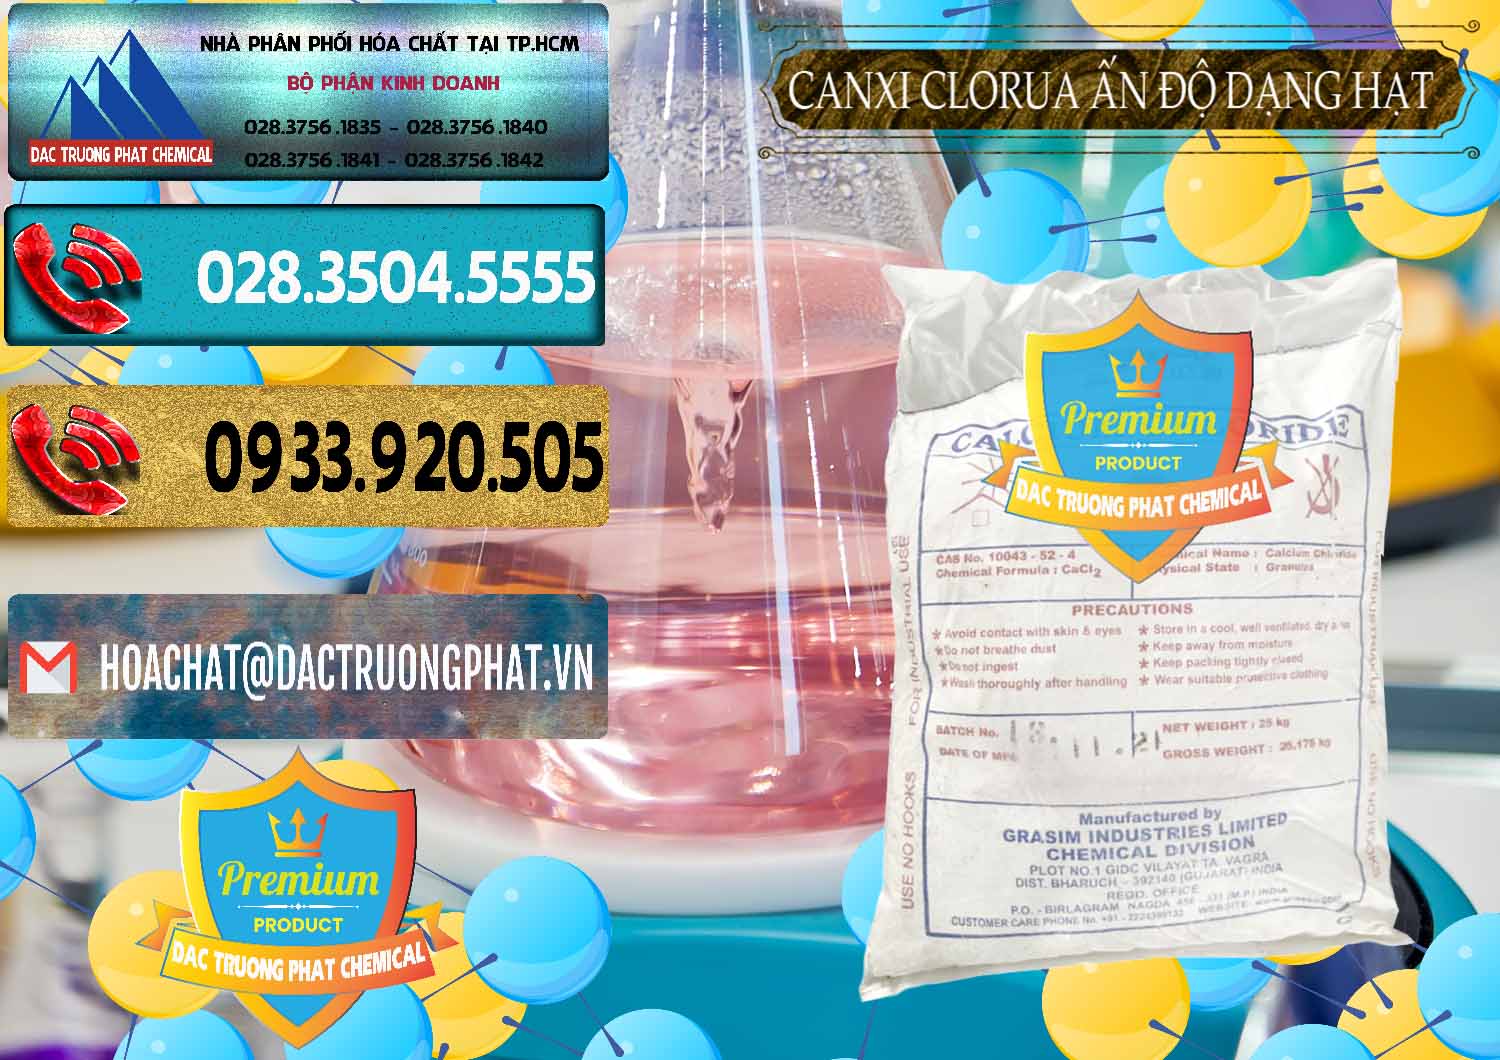 Công ty chuyên bán - phân phối CaCl2 – Canxi Clorua Dạng Hạt Aditya Birla Grasim Ấn Độ India - 0418 - Nơi chuyên nhập khẩu và cung cấp hóa chất tại TP.HCM - hoachatdetnhuom.com